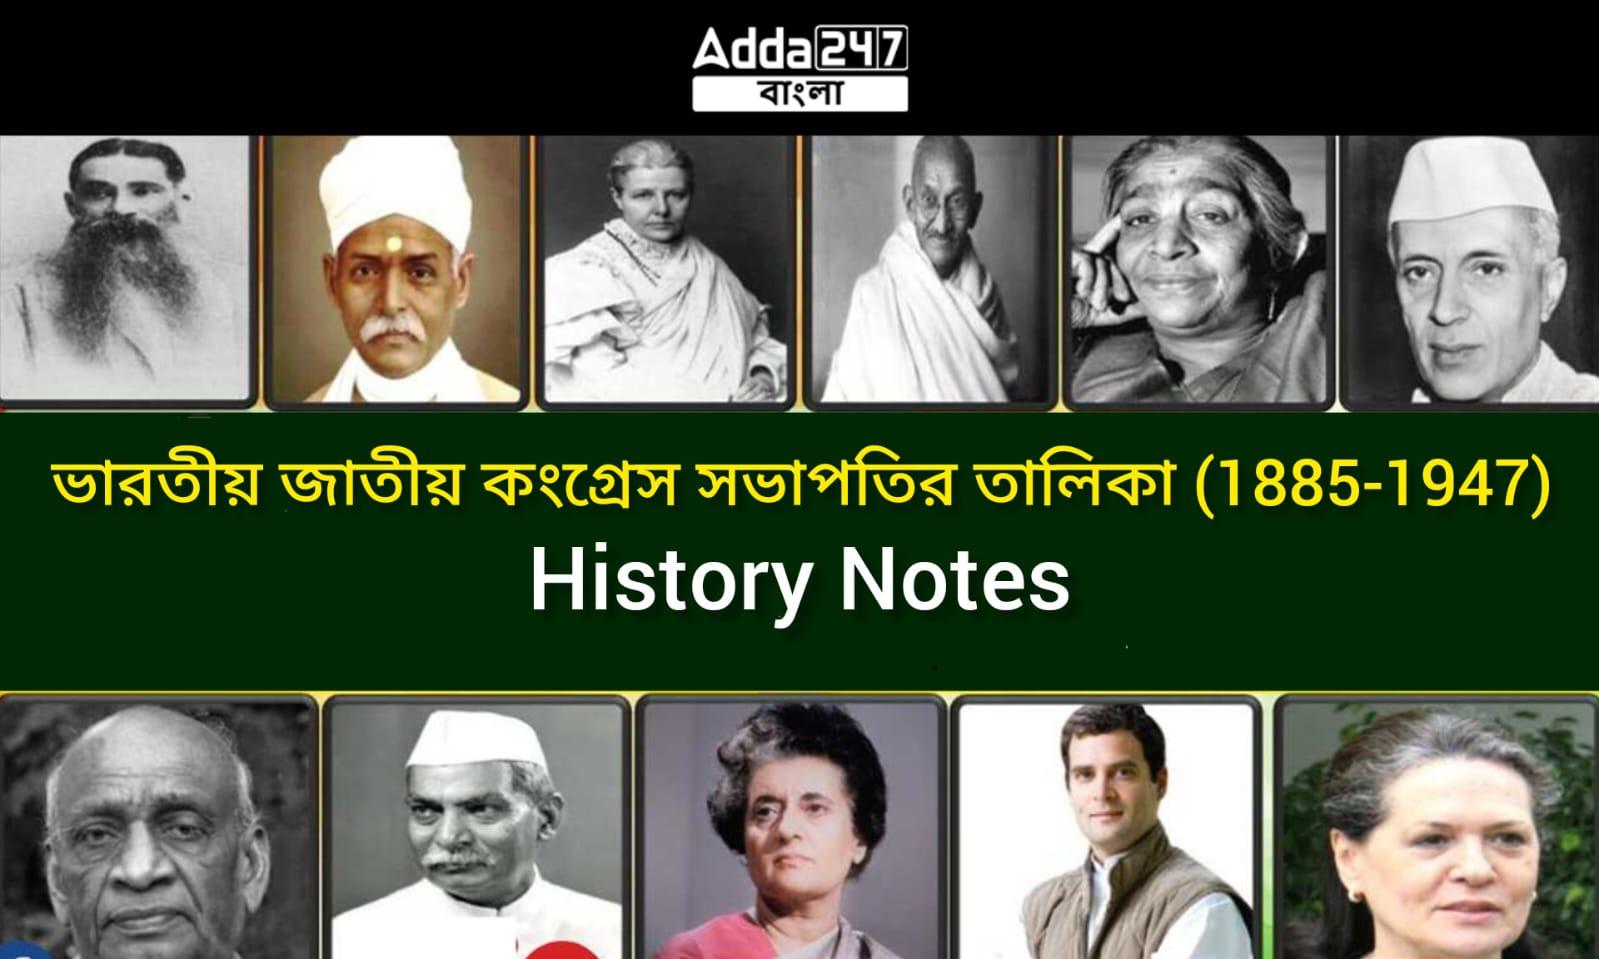 ভারতীয় জাতীয় কংগ্রেস সভাপতির তালিকা (1885-1947), -History Notes